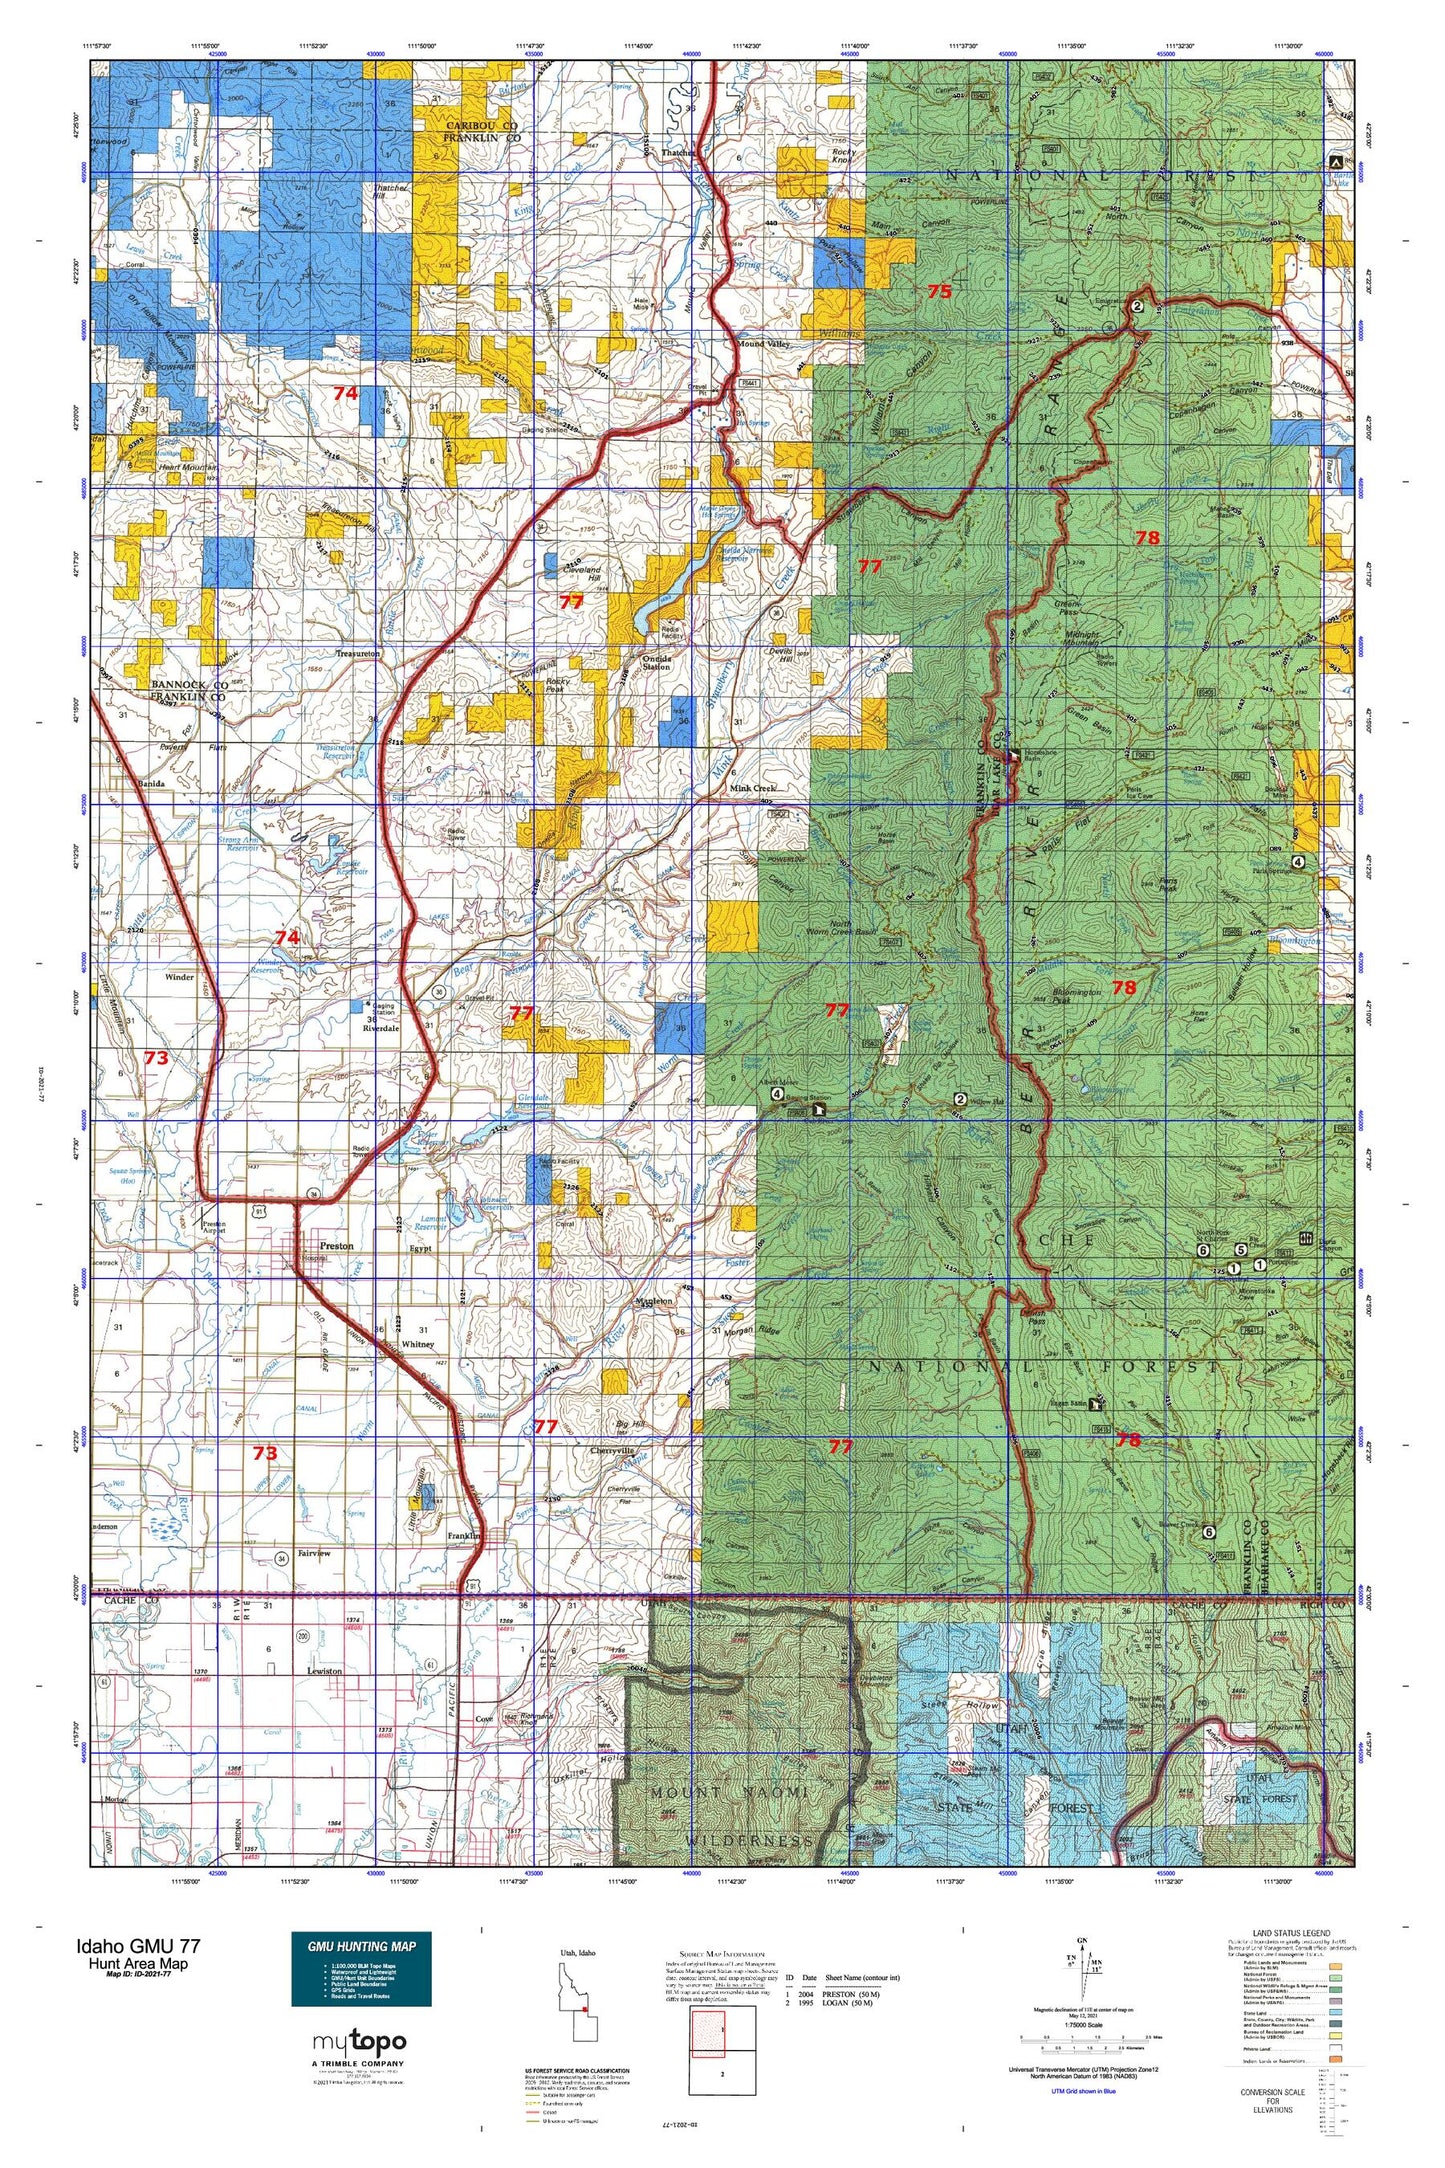 Idaho GMU 77 Map Image